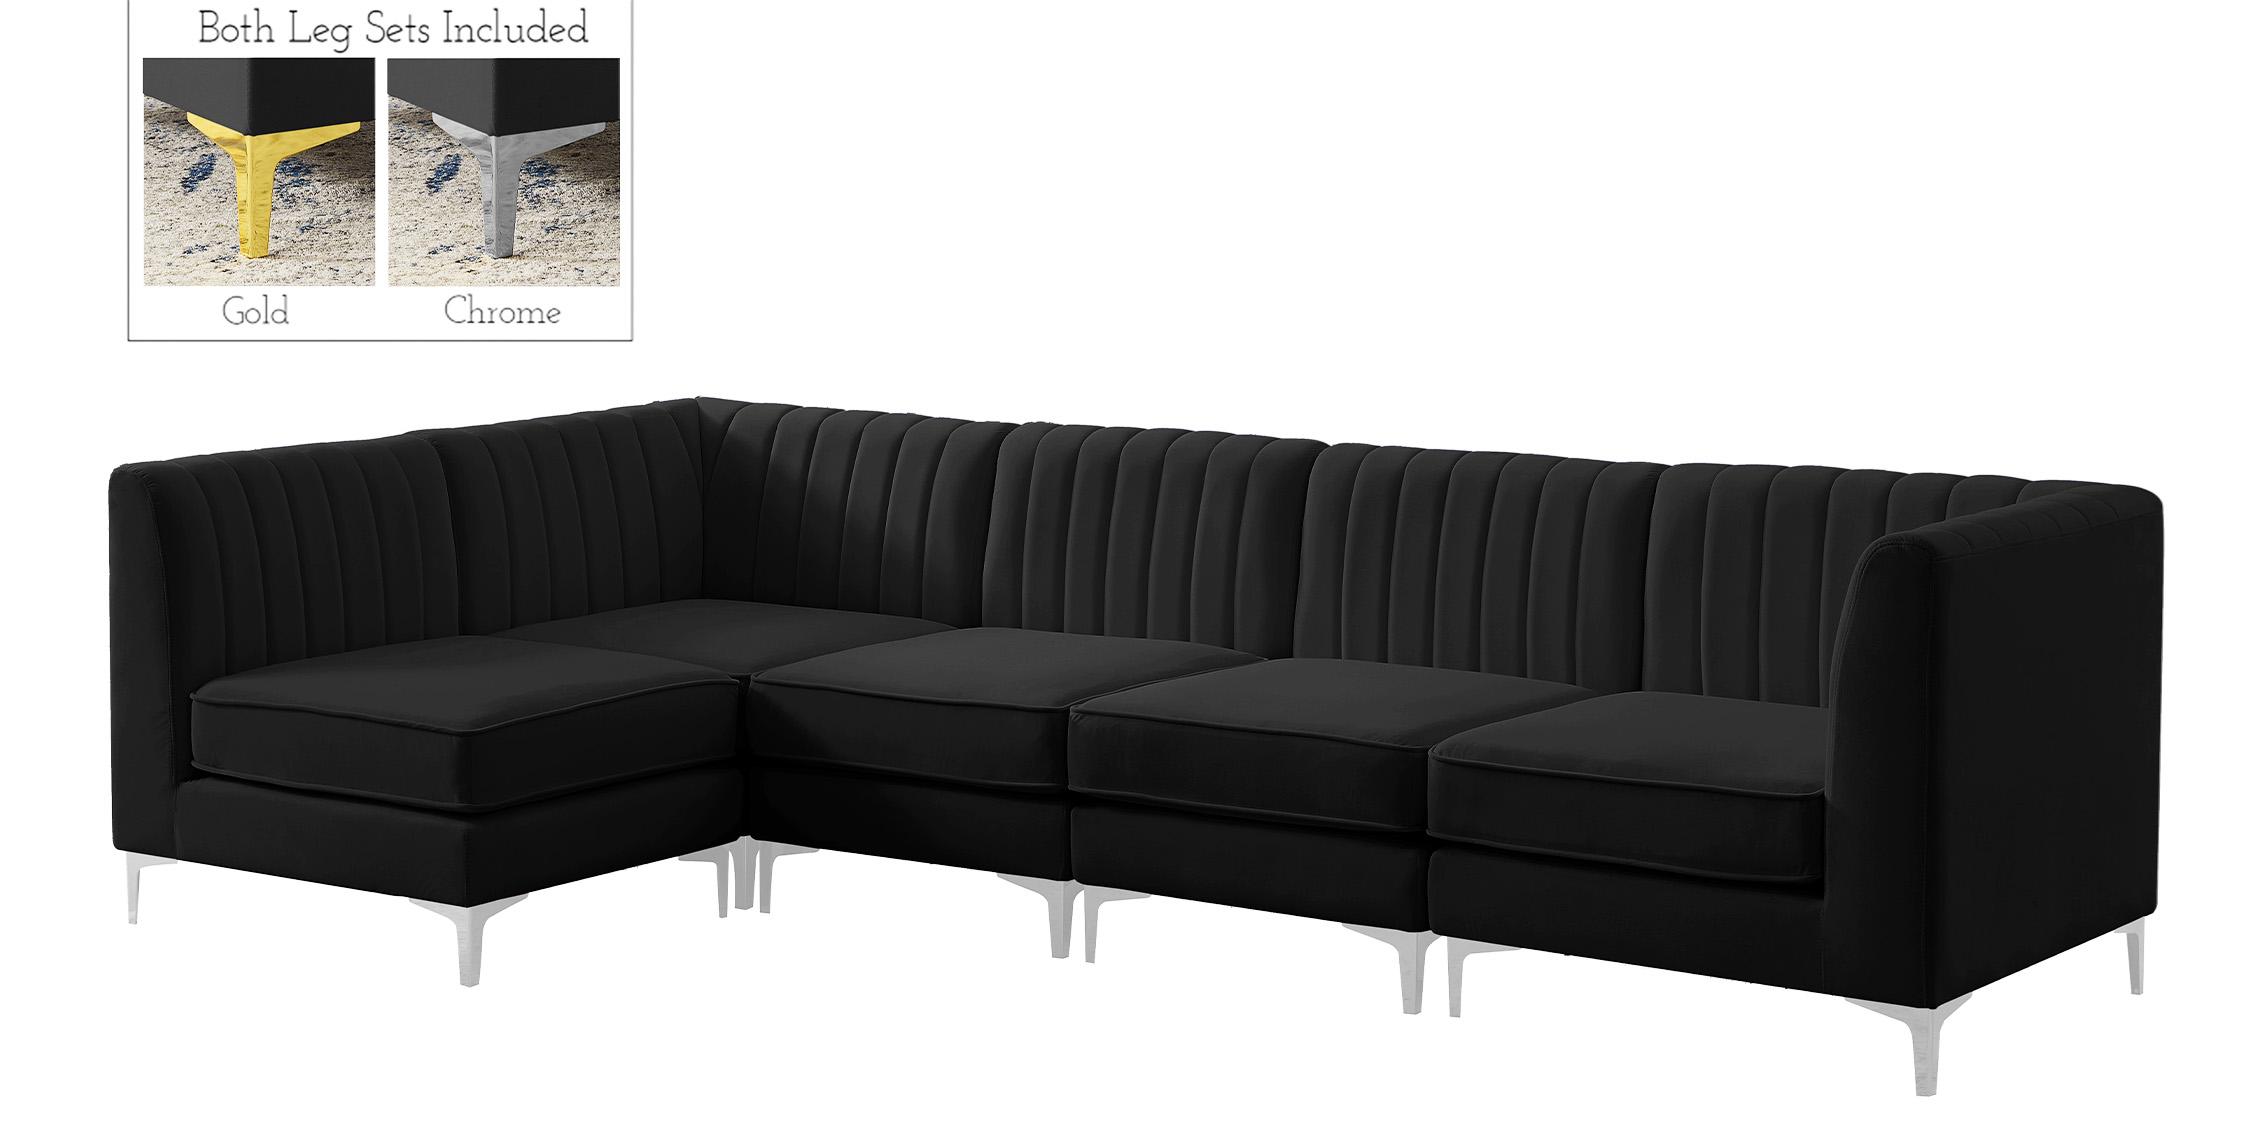 

    
Meridian Furniture ALINA 604Black-Sec5B Modular Sectional Sofa Black 604Black-Sec5B
